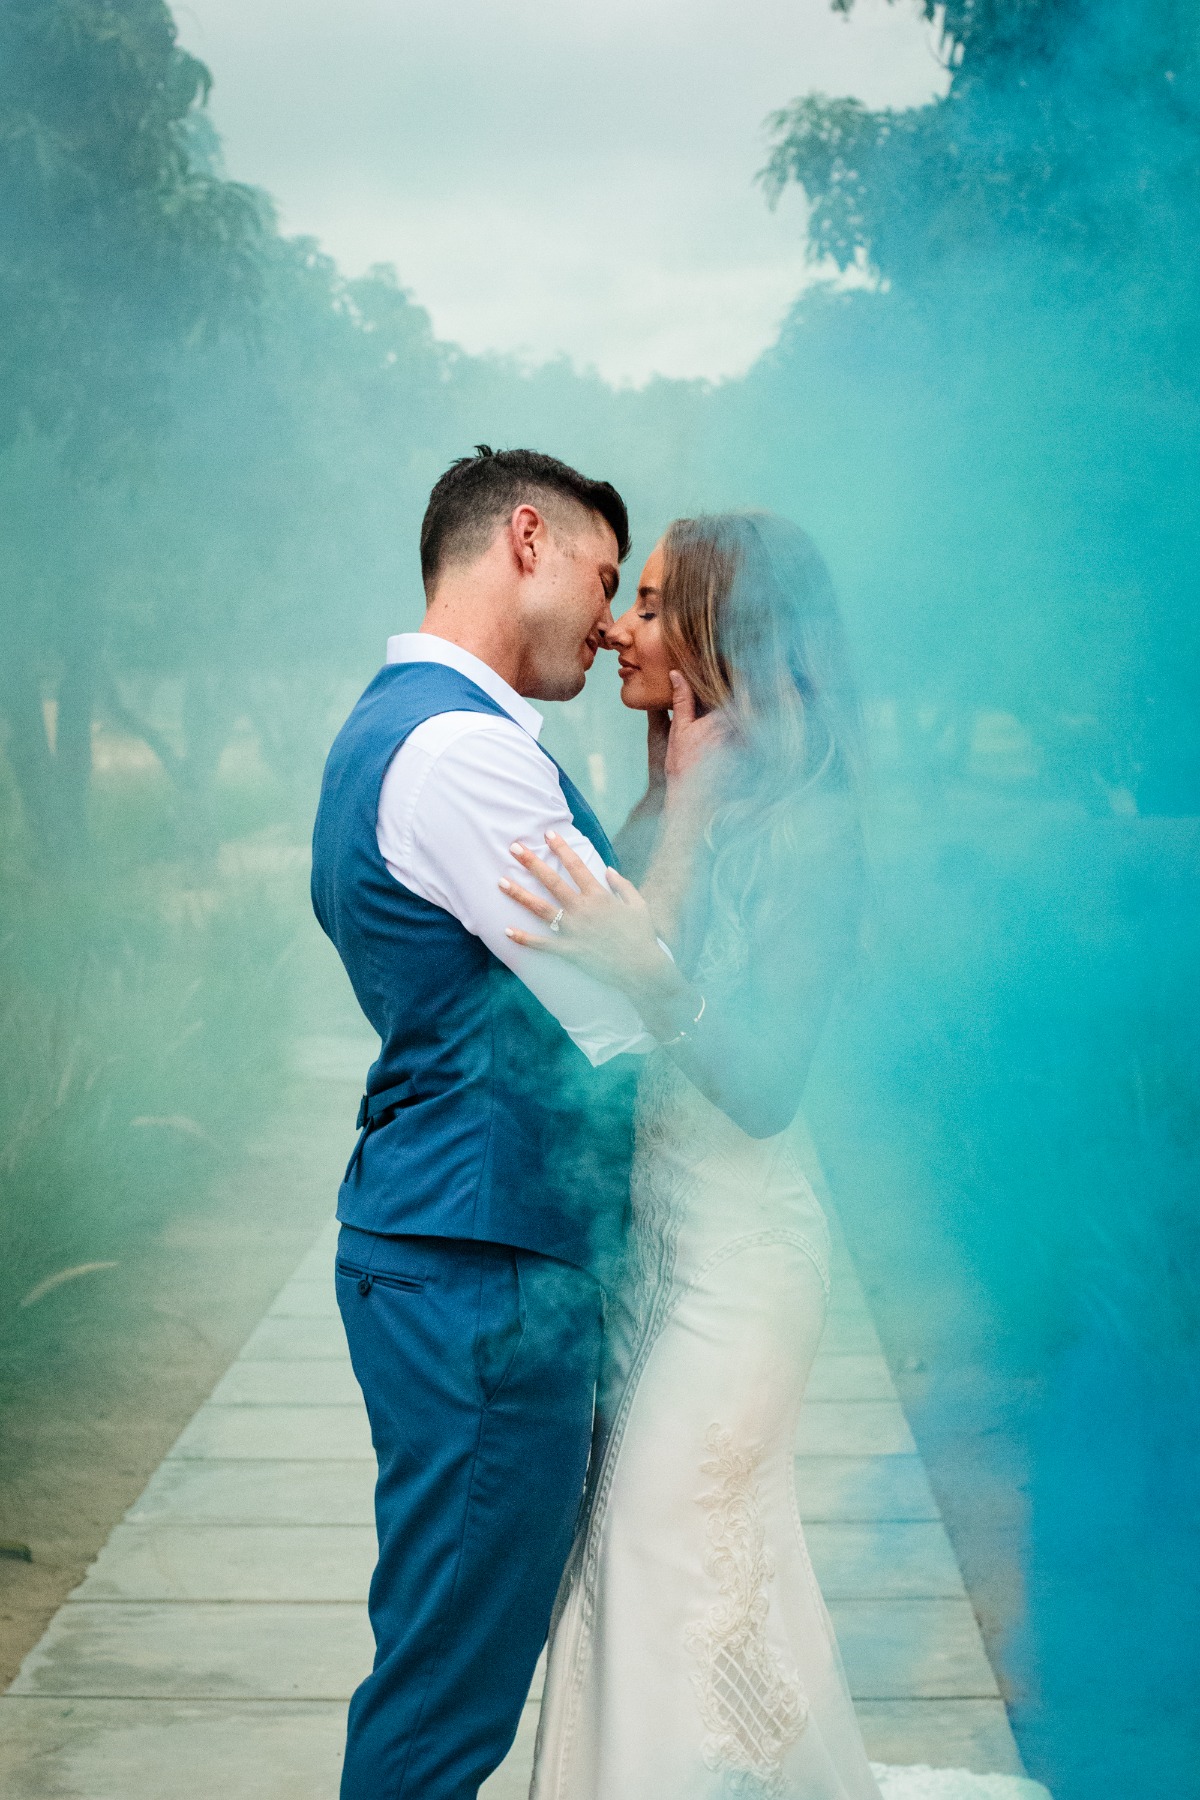 Smoke bomb wedding photo